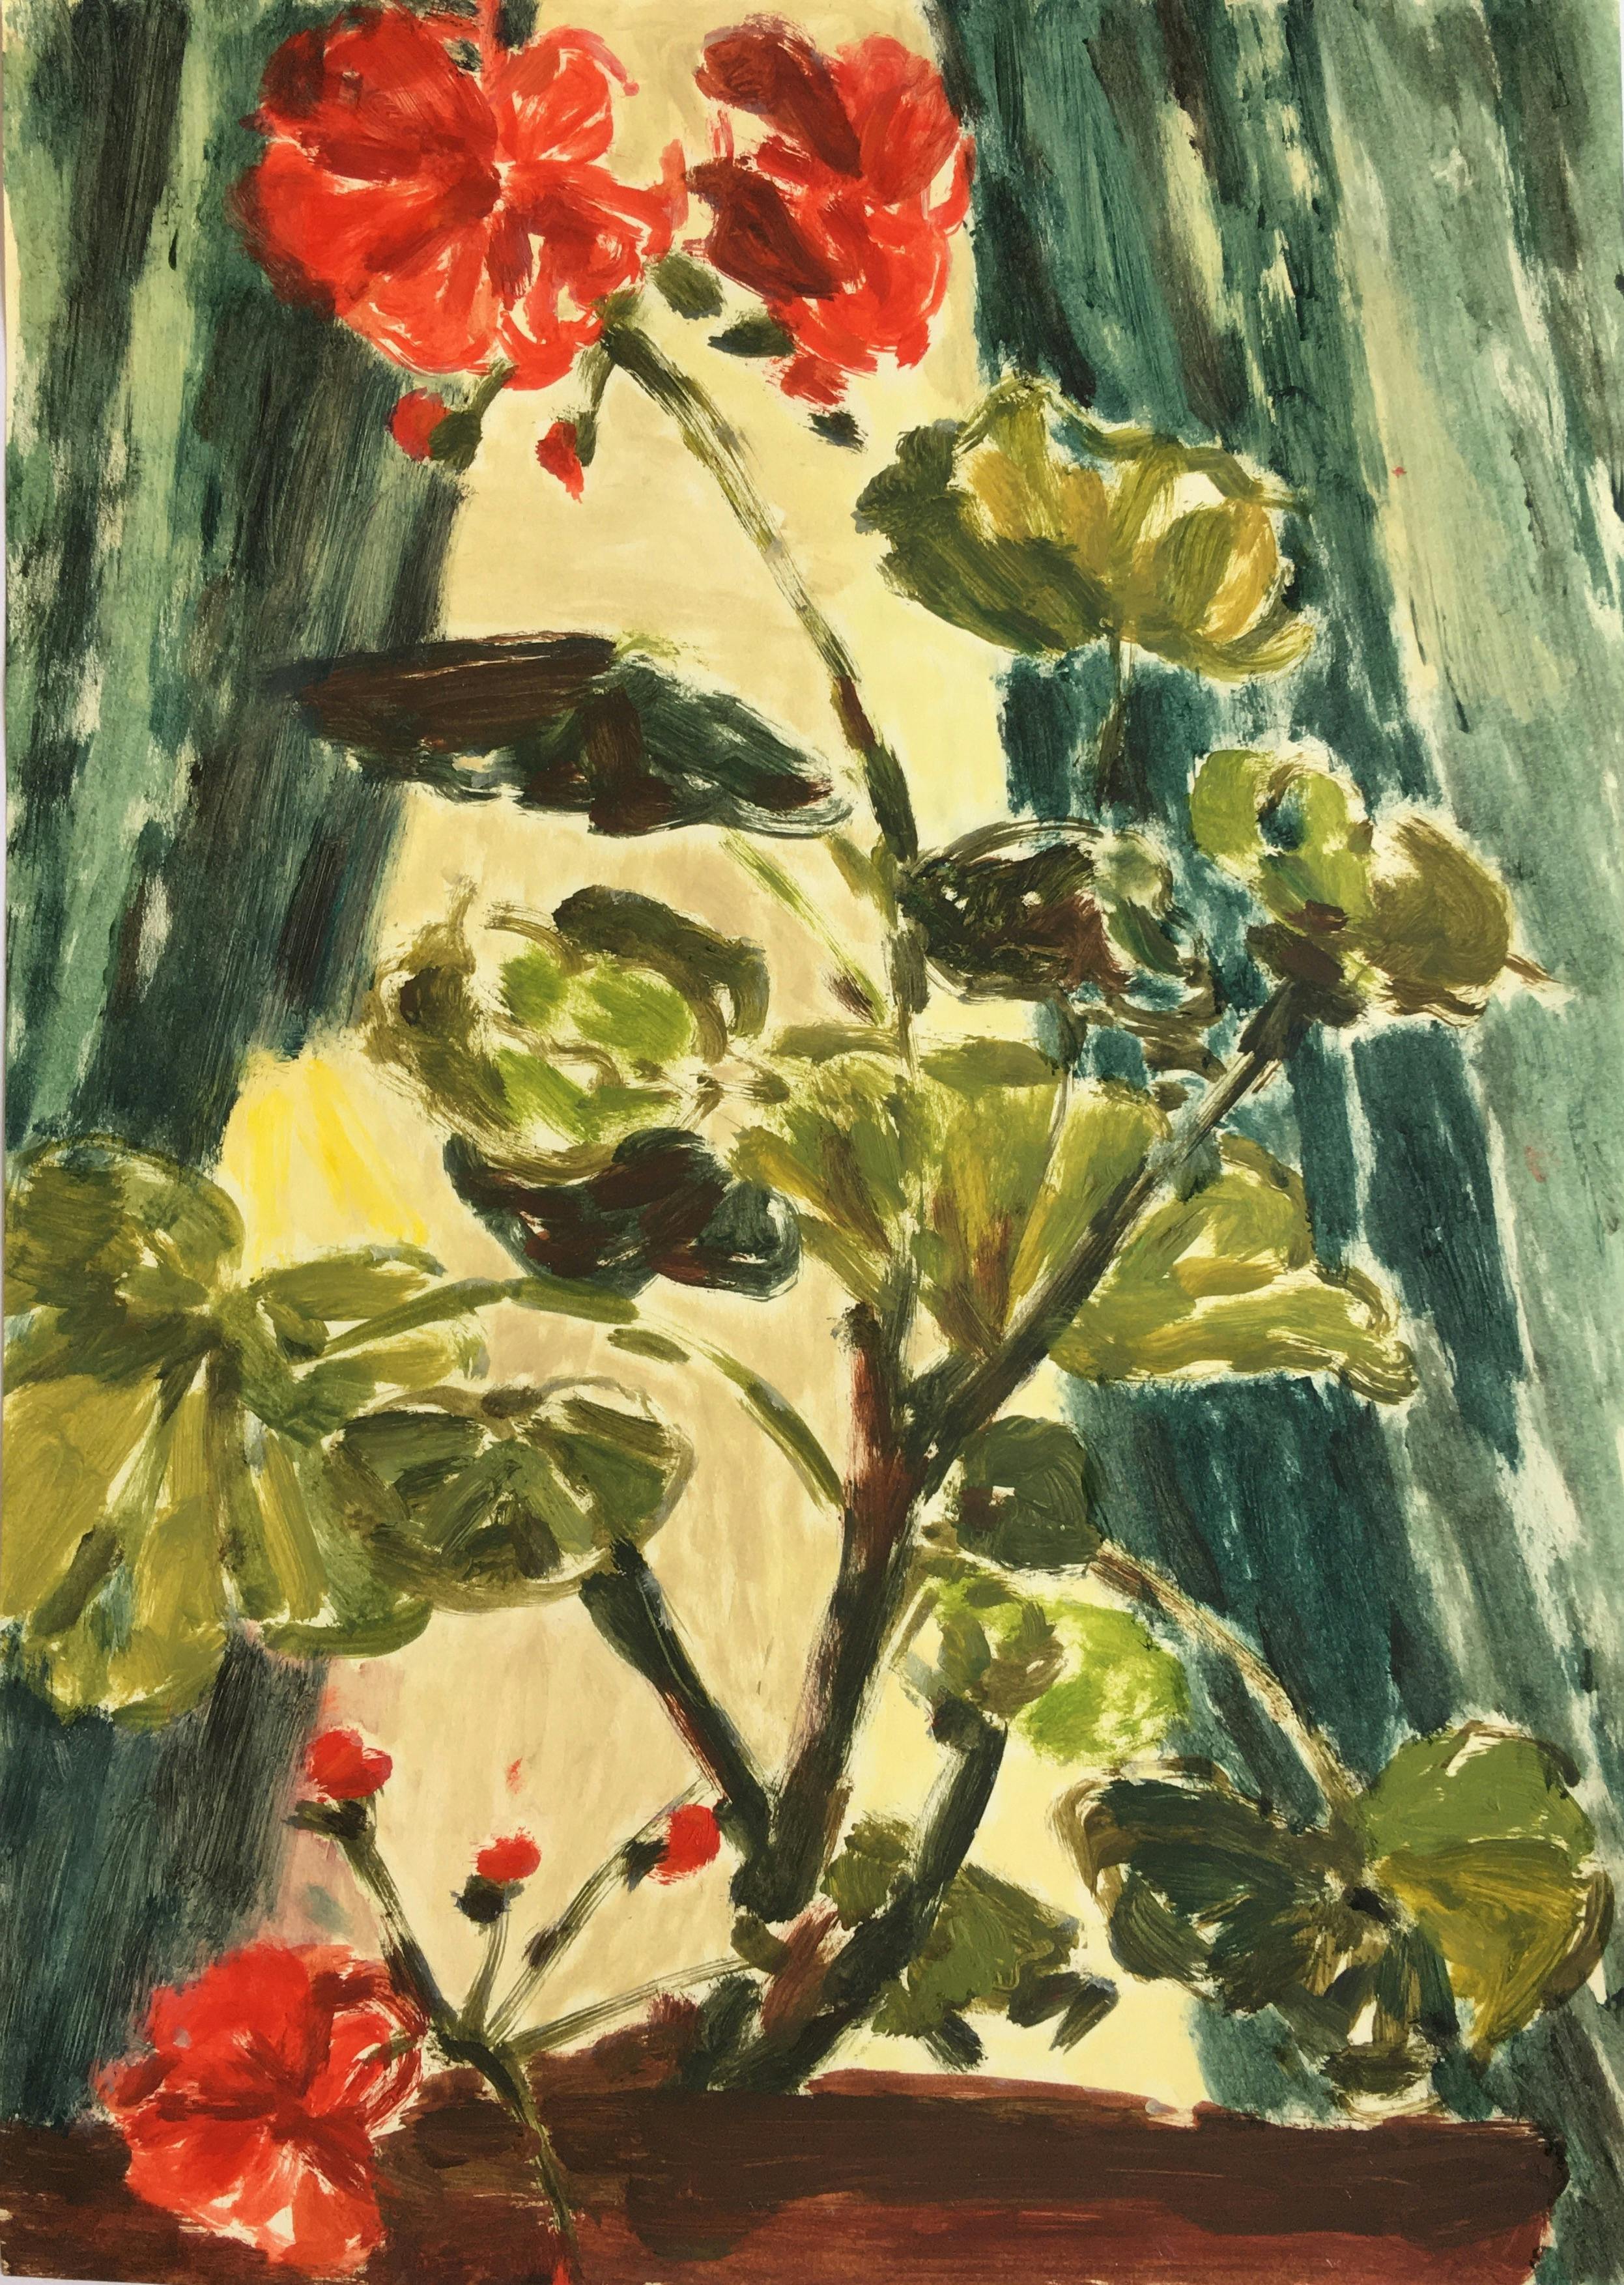 Red Geranium, 2020. Oil on paper, 21 x 29.5cm